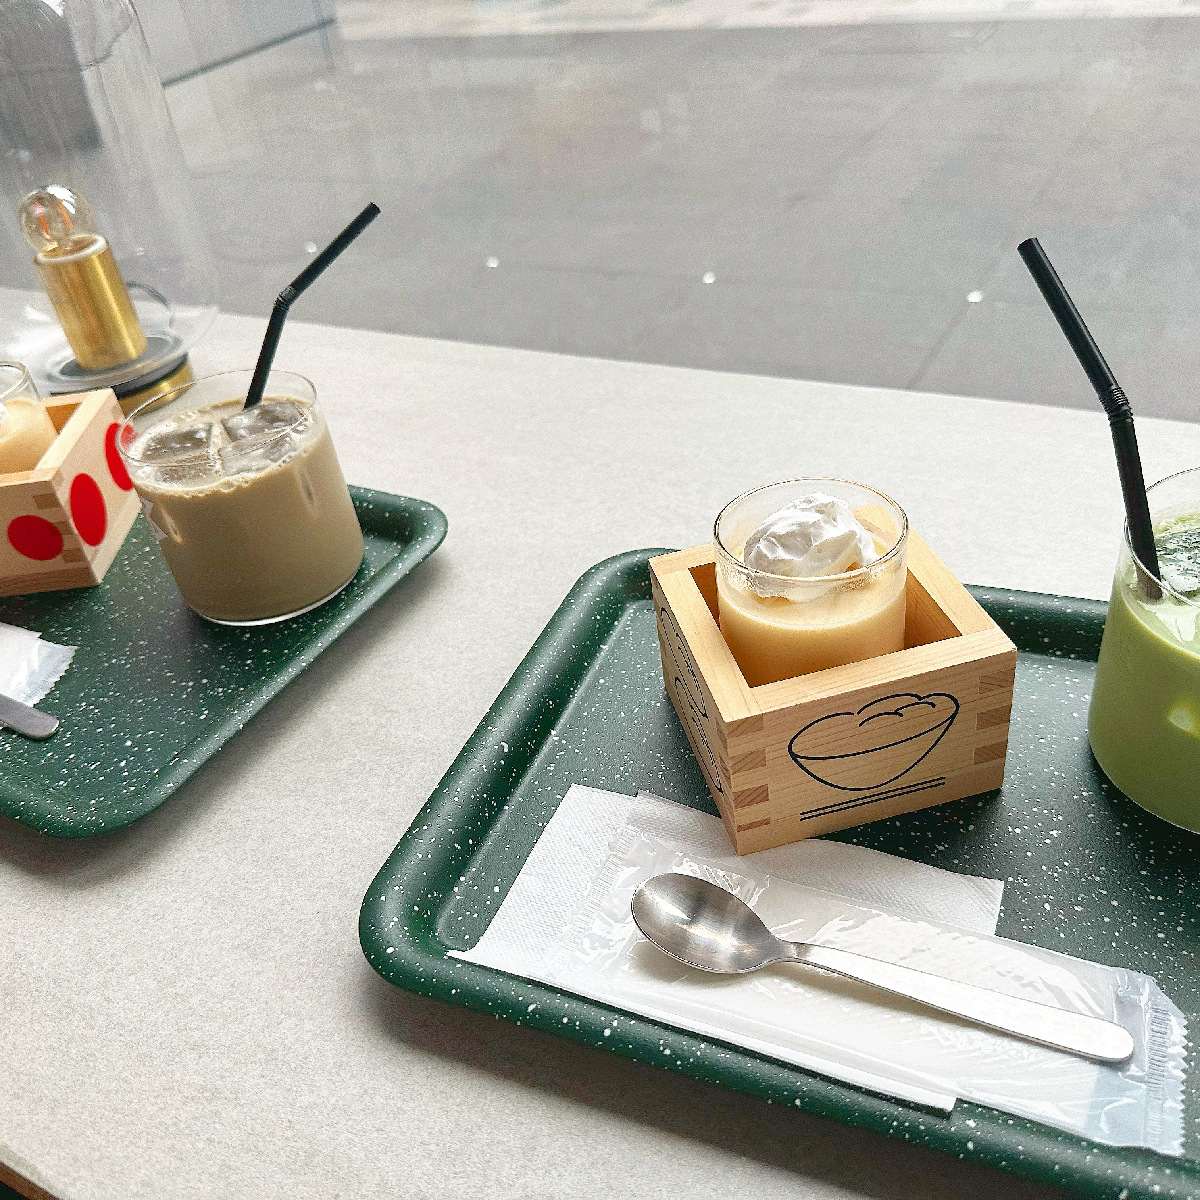 BAG cafe  【BUG cafe】【東京駅】【カフェ巡り】【無機質カフェ】